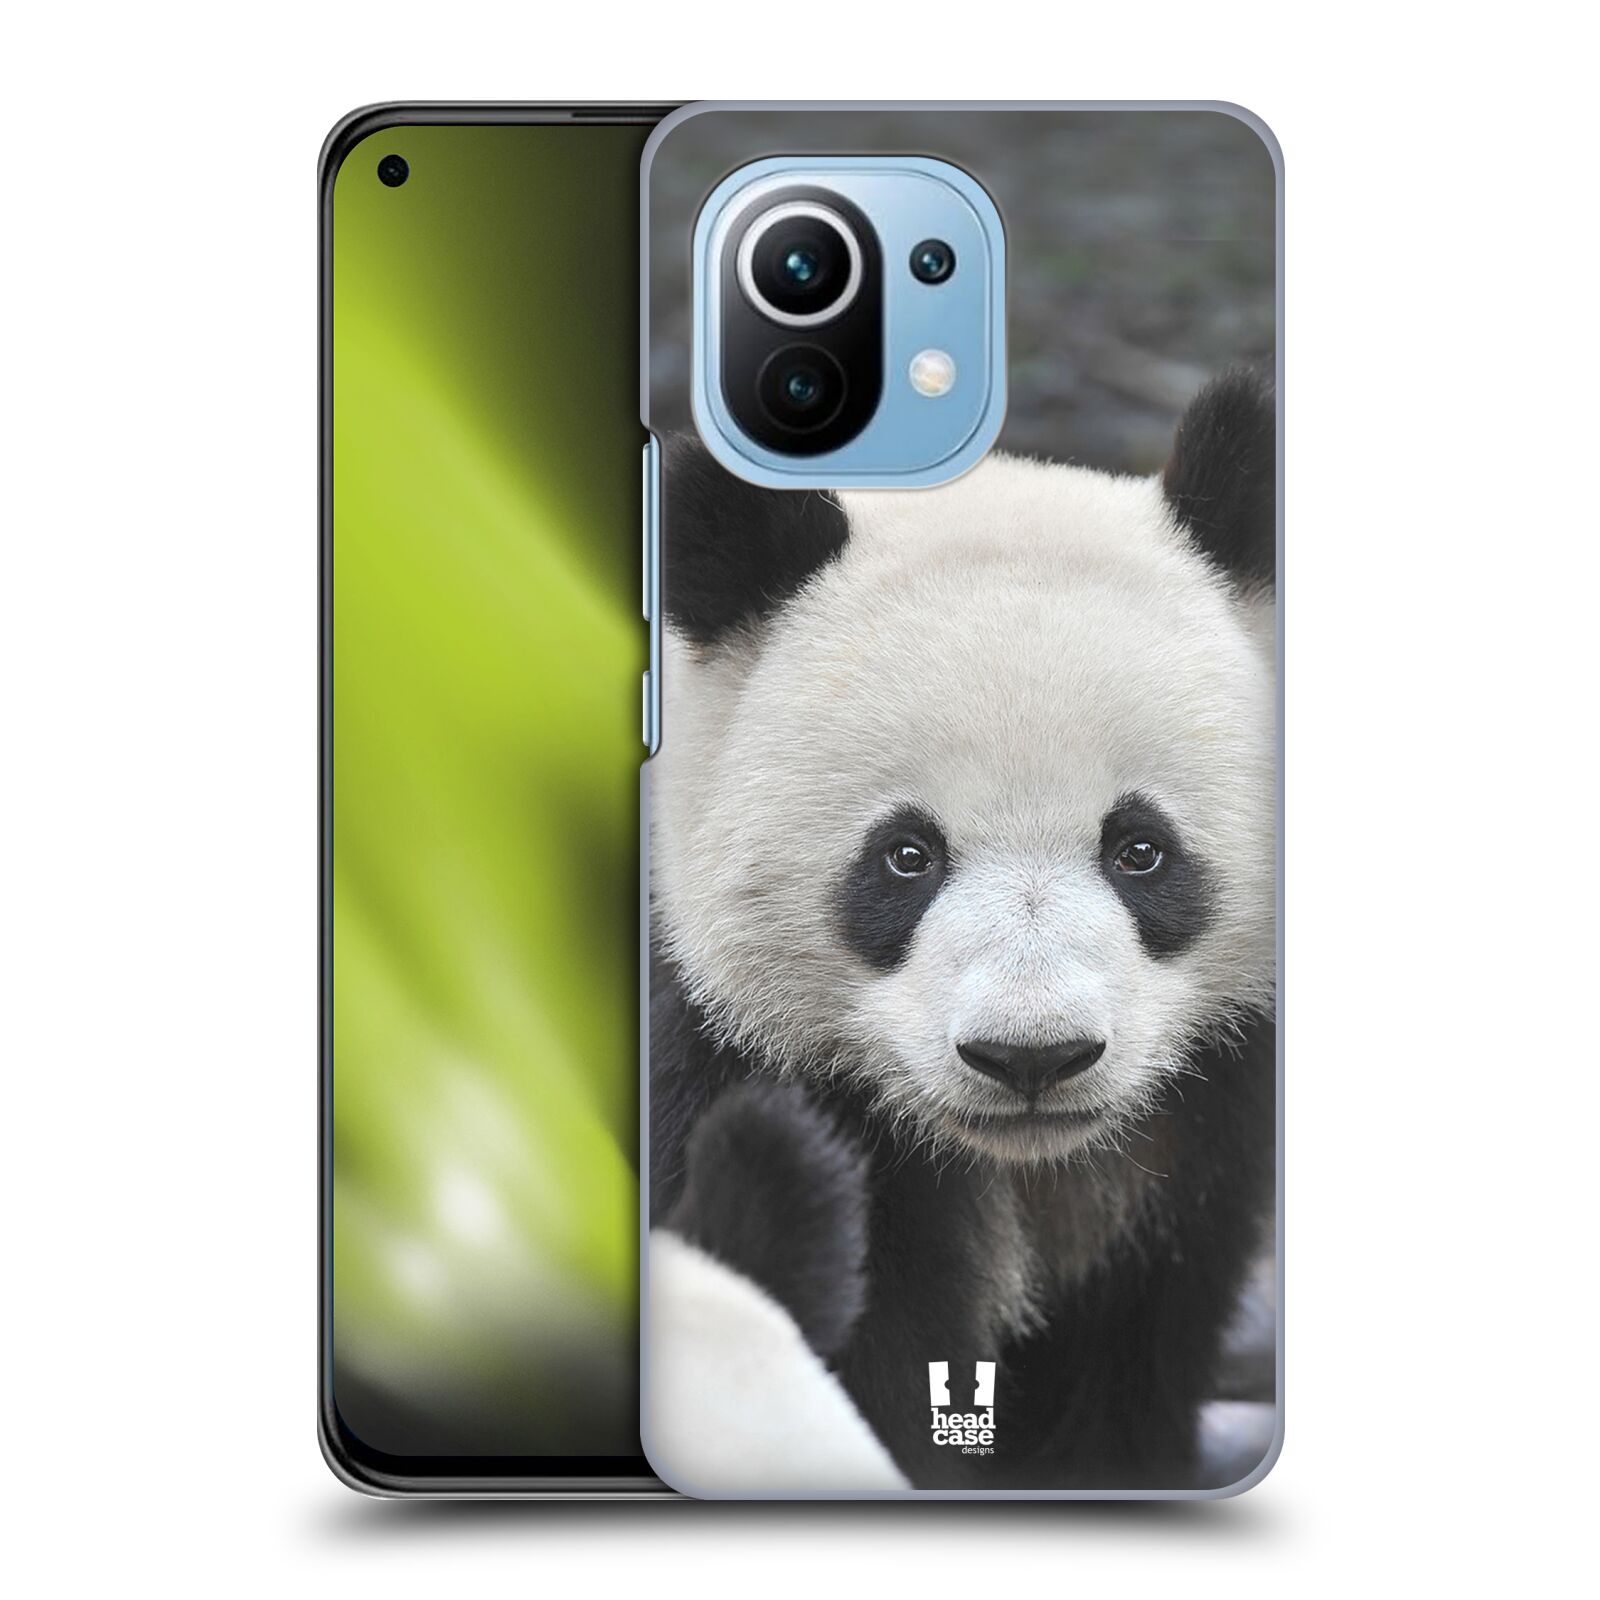 Zadní obal pro mobil Xiaomi Mi 11 - HEAD CASE - Svět zvířat medvěd panda